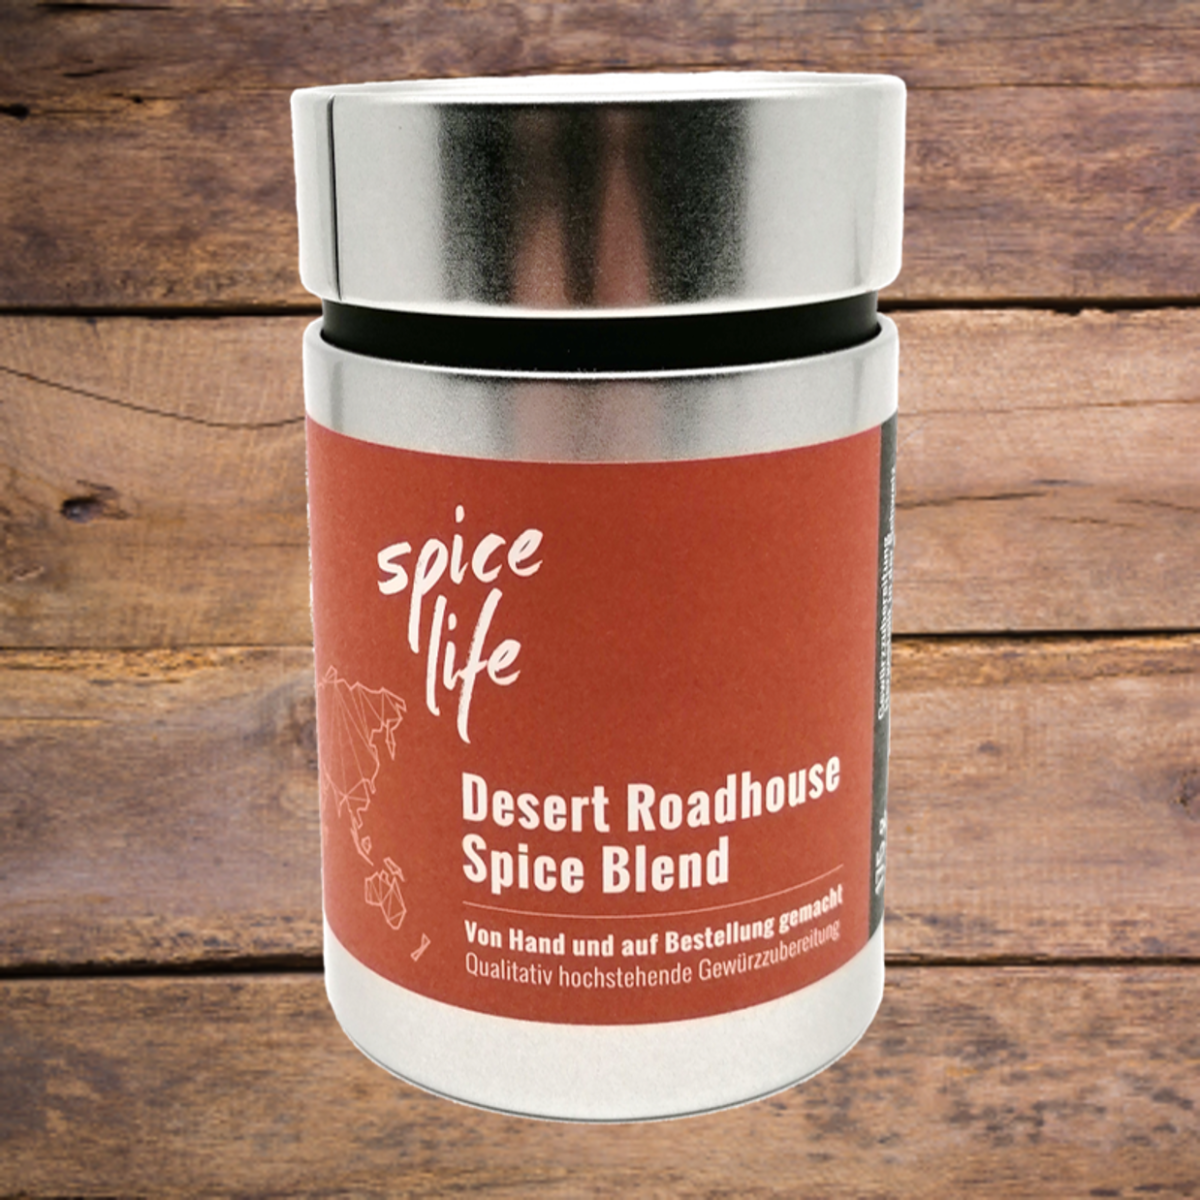 Desert Roadhouse Spice Blend